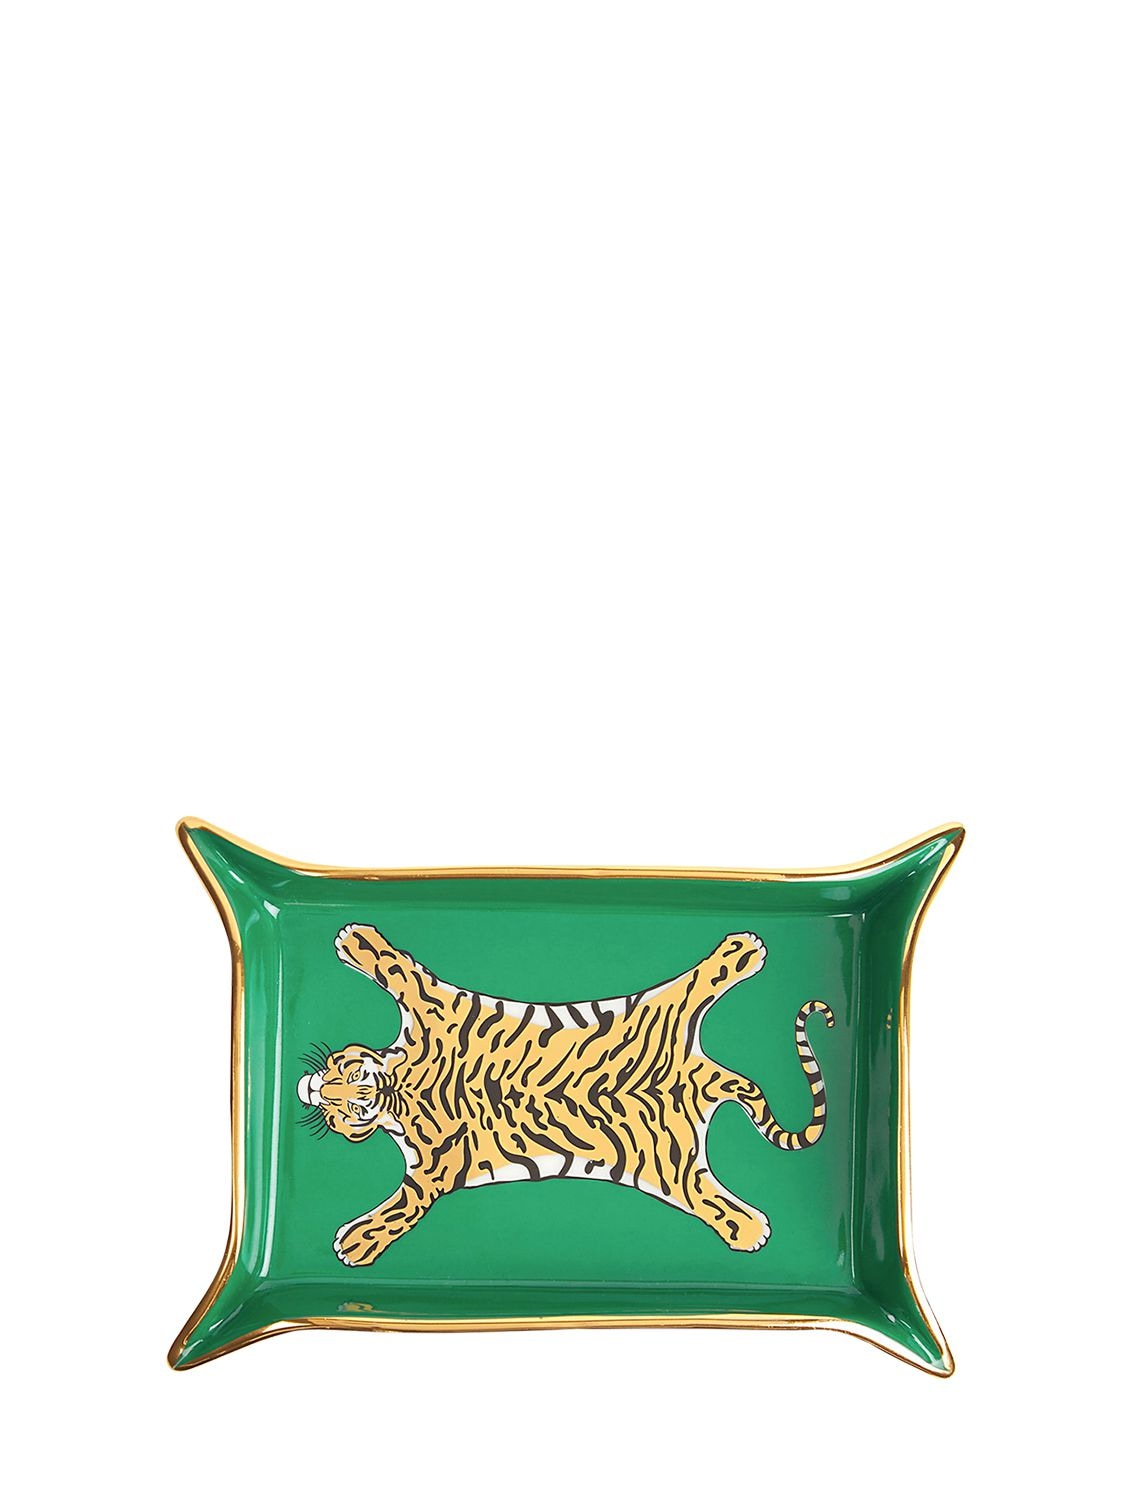 Jonathan Adler Tiger Porcelain Valet Tray In Green